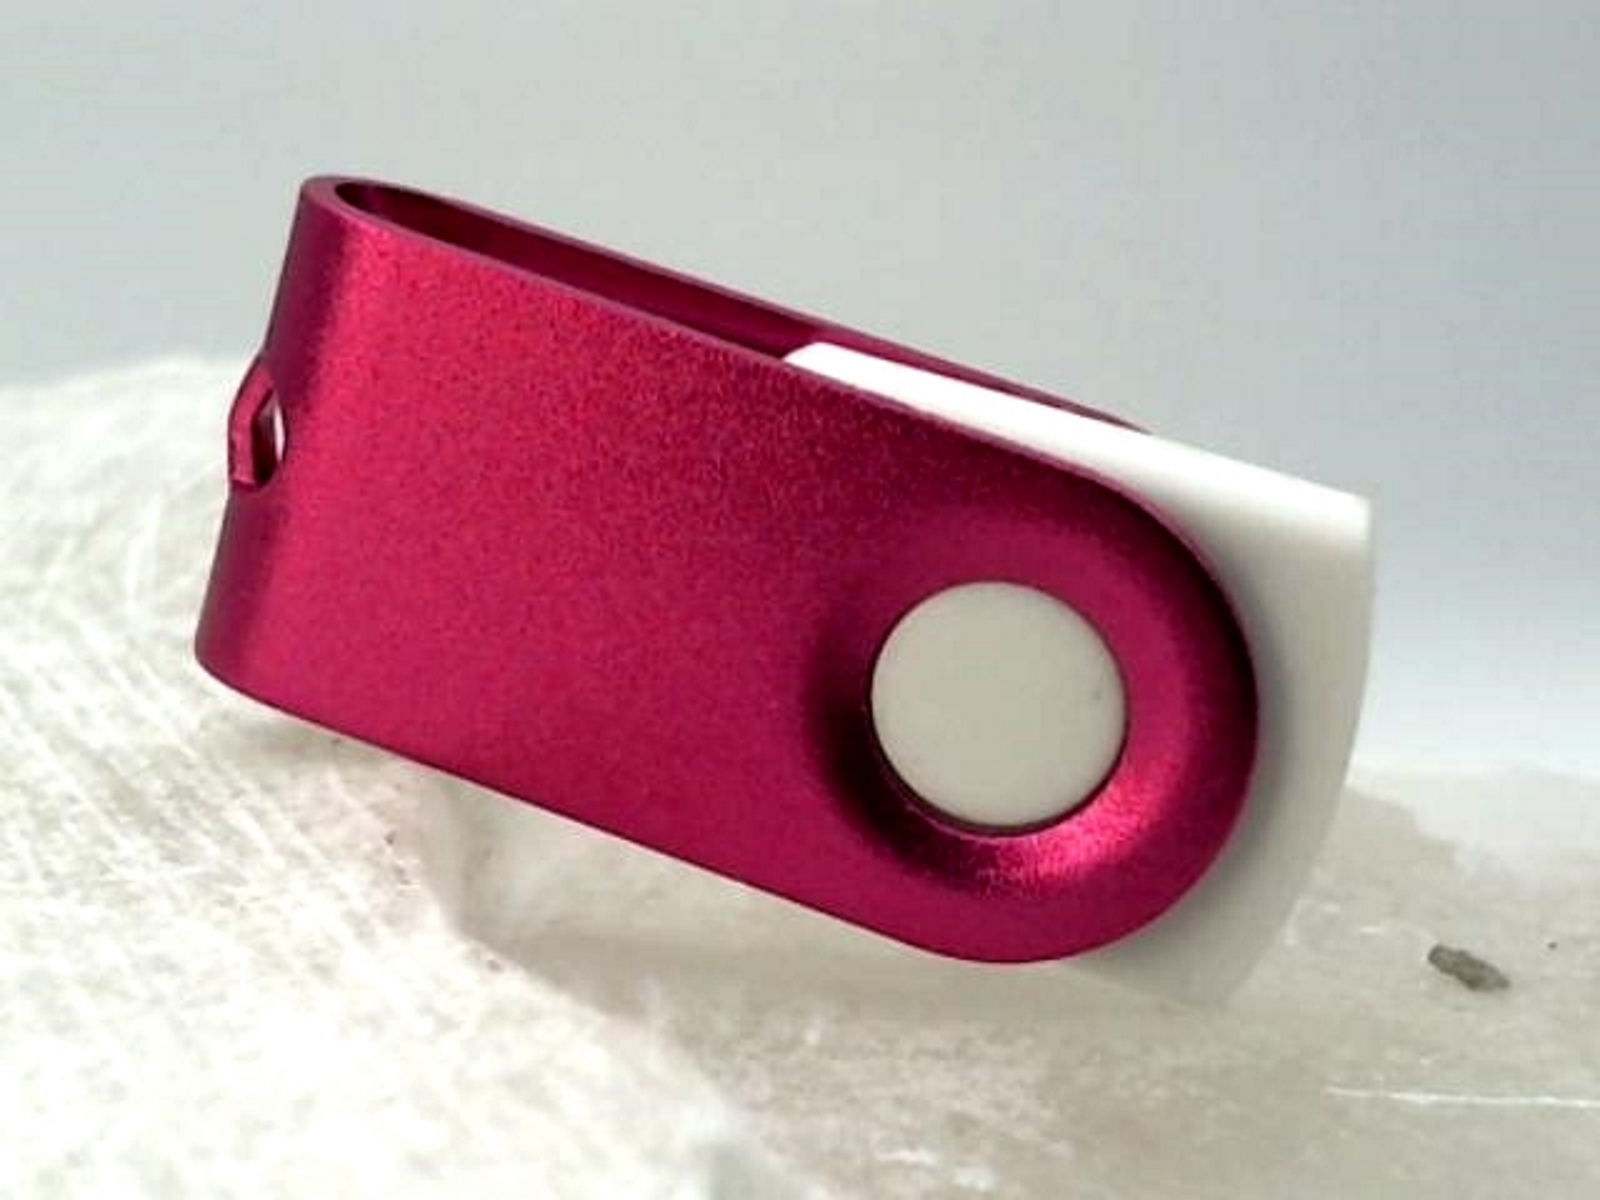 USB GERMANY 128 MINI-SWIVEL (Weiß-Pink, ® USB-Stick GB)